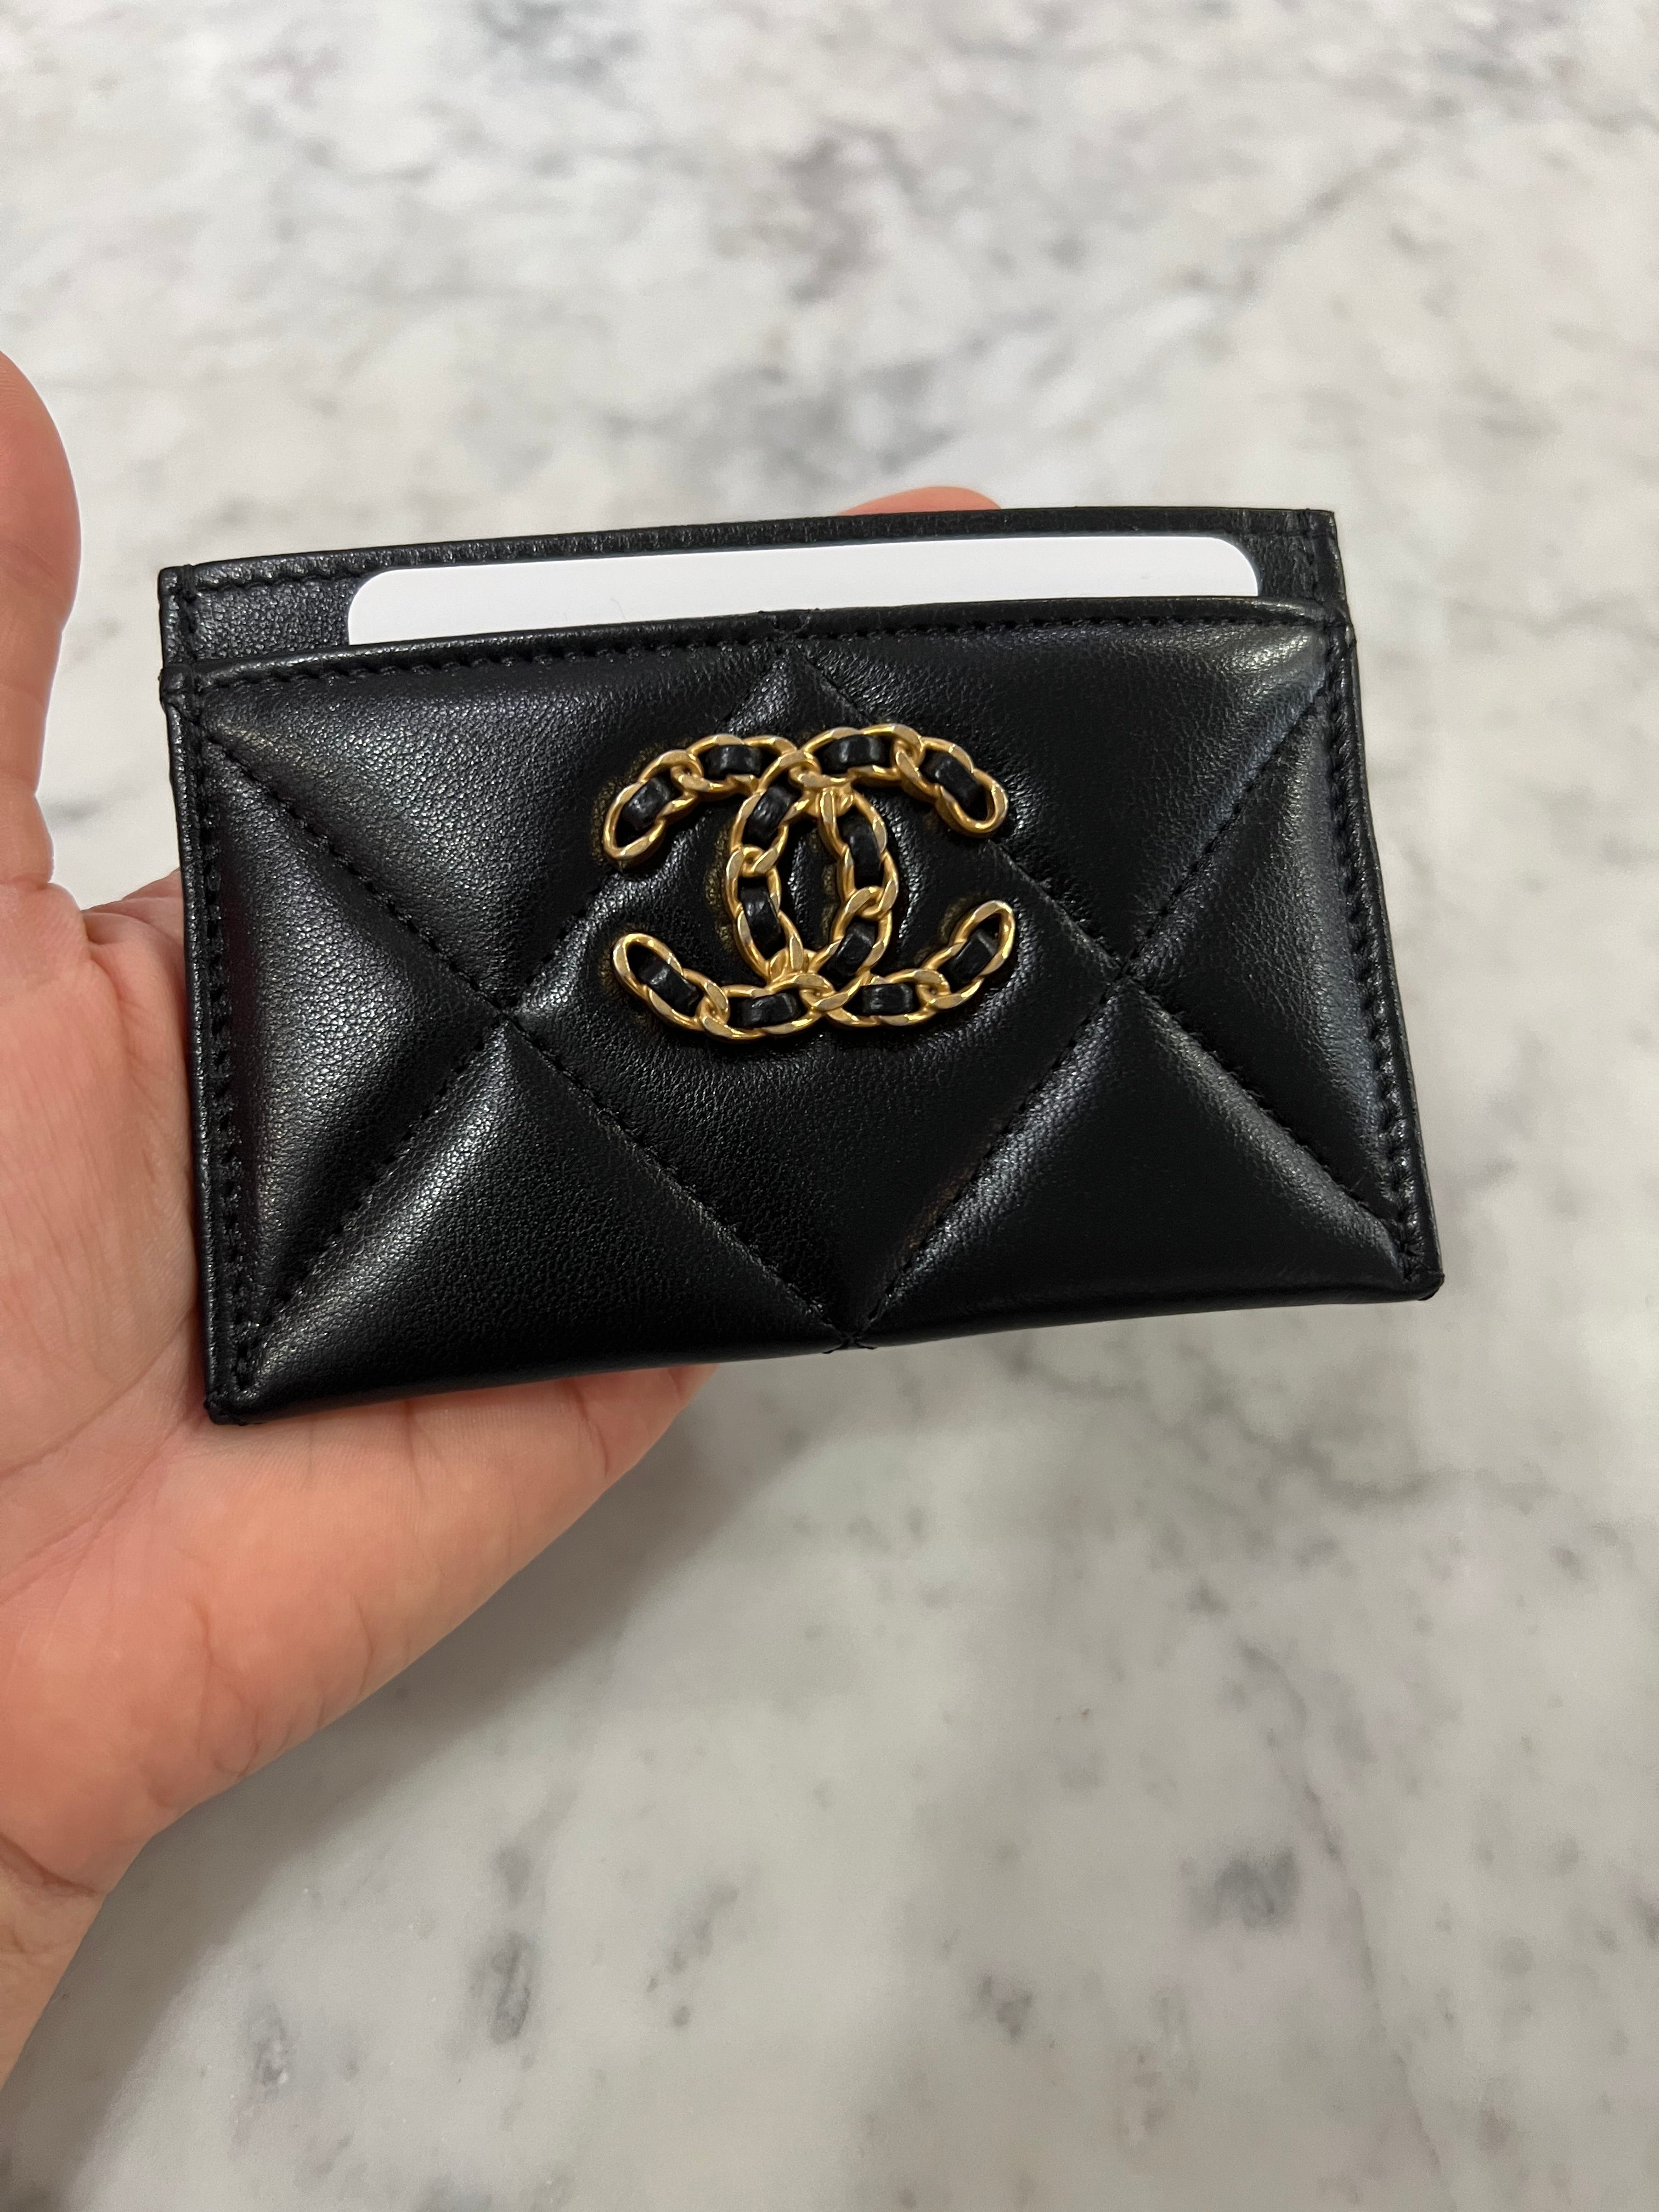 wallet chanel 19 flap